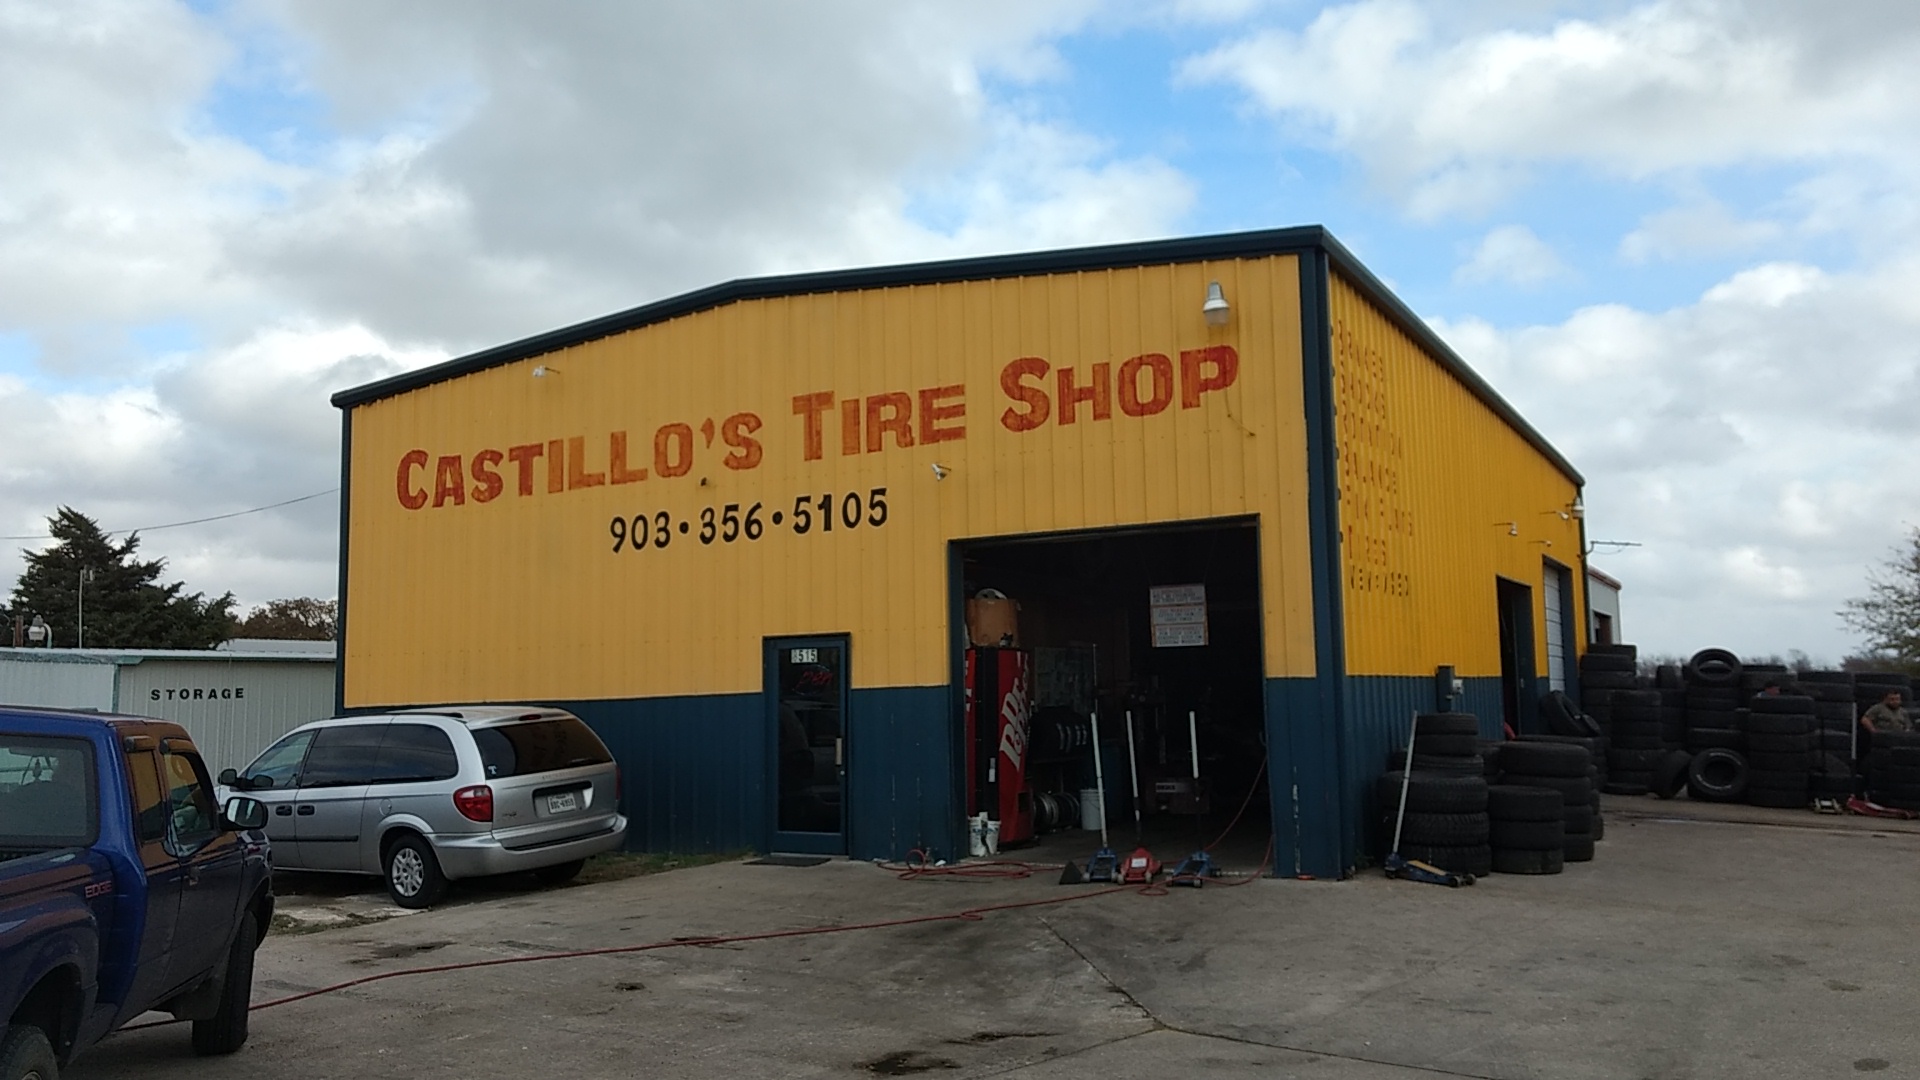 Castillo's Tire Shop